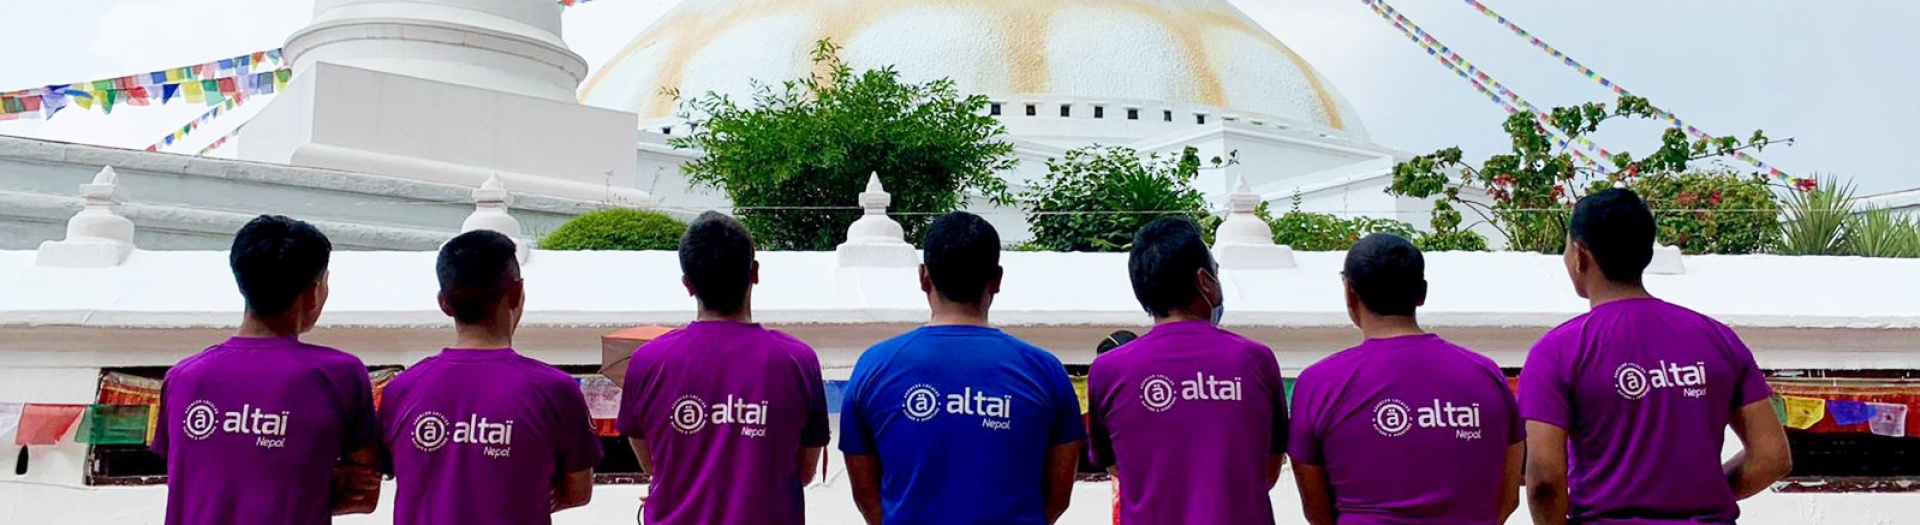 Notre équipe Altaï Népal